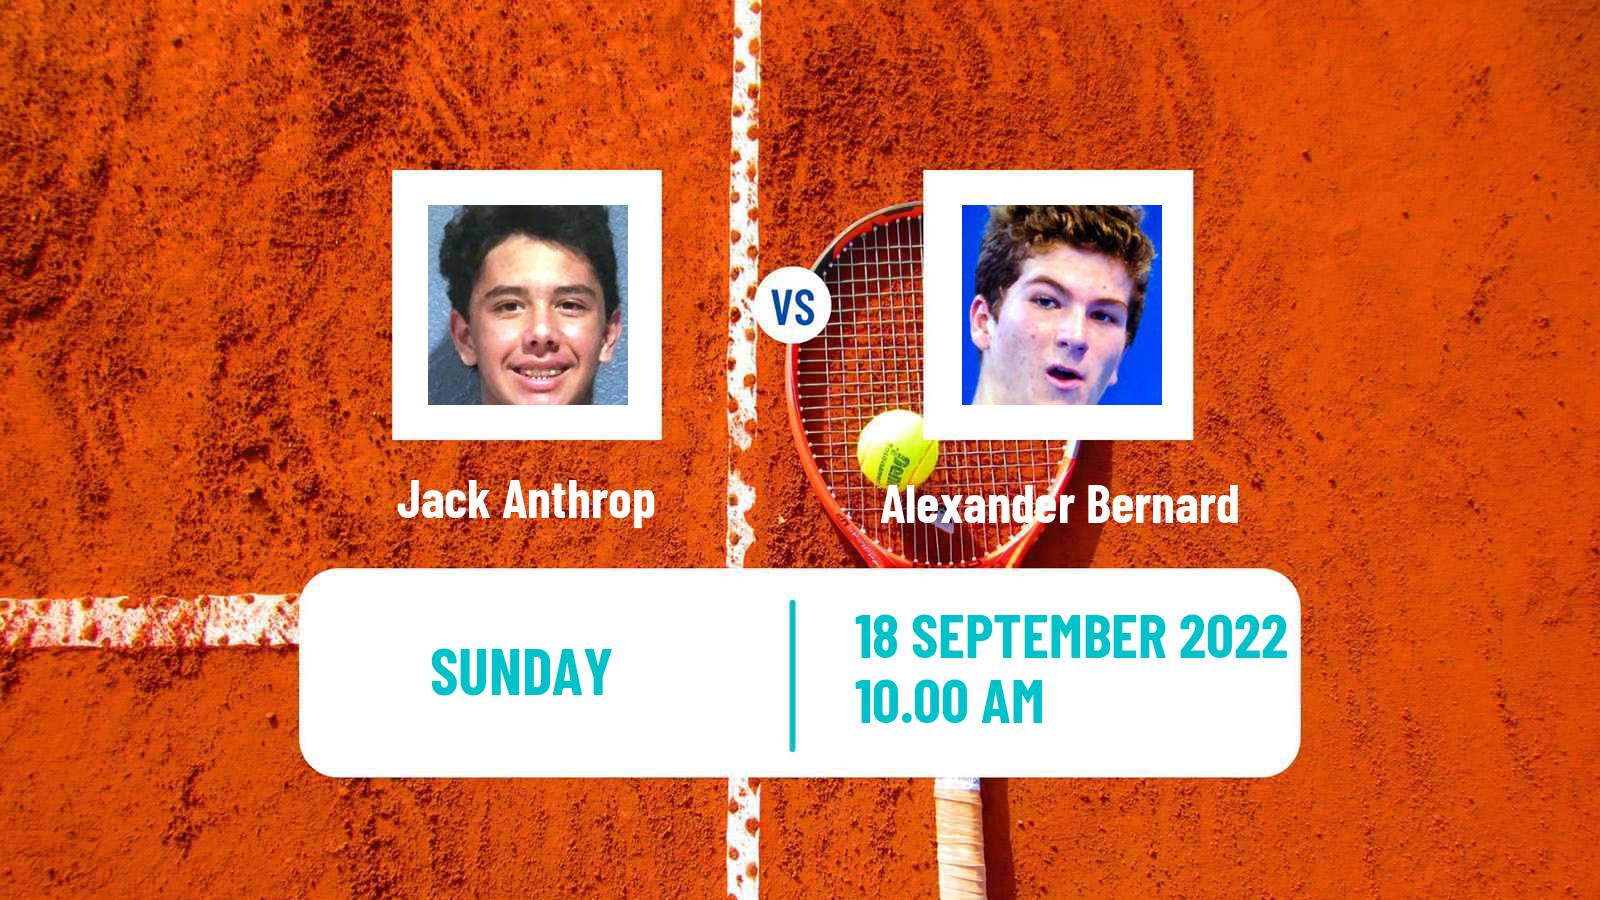 Tennis ATP Challenger Jack Anthrop - Alexander Bernard